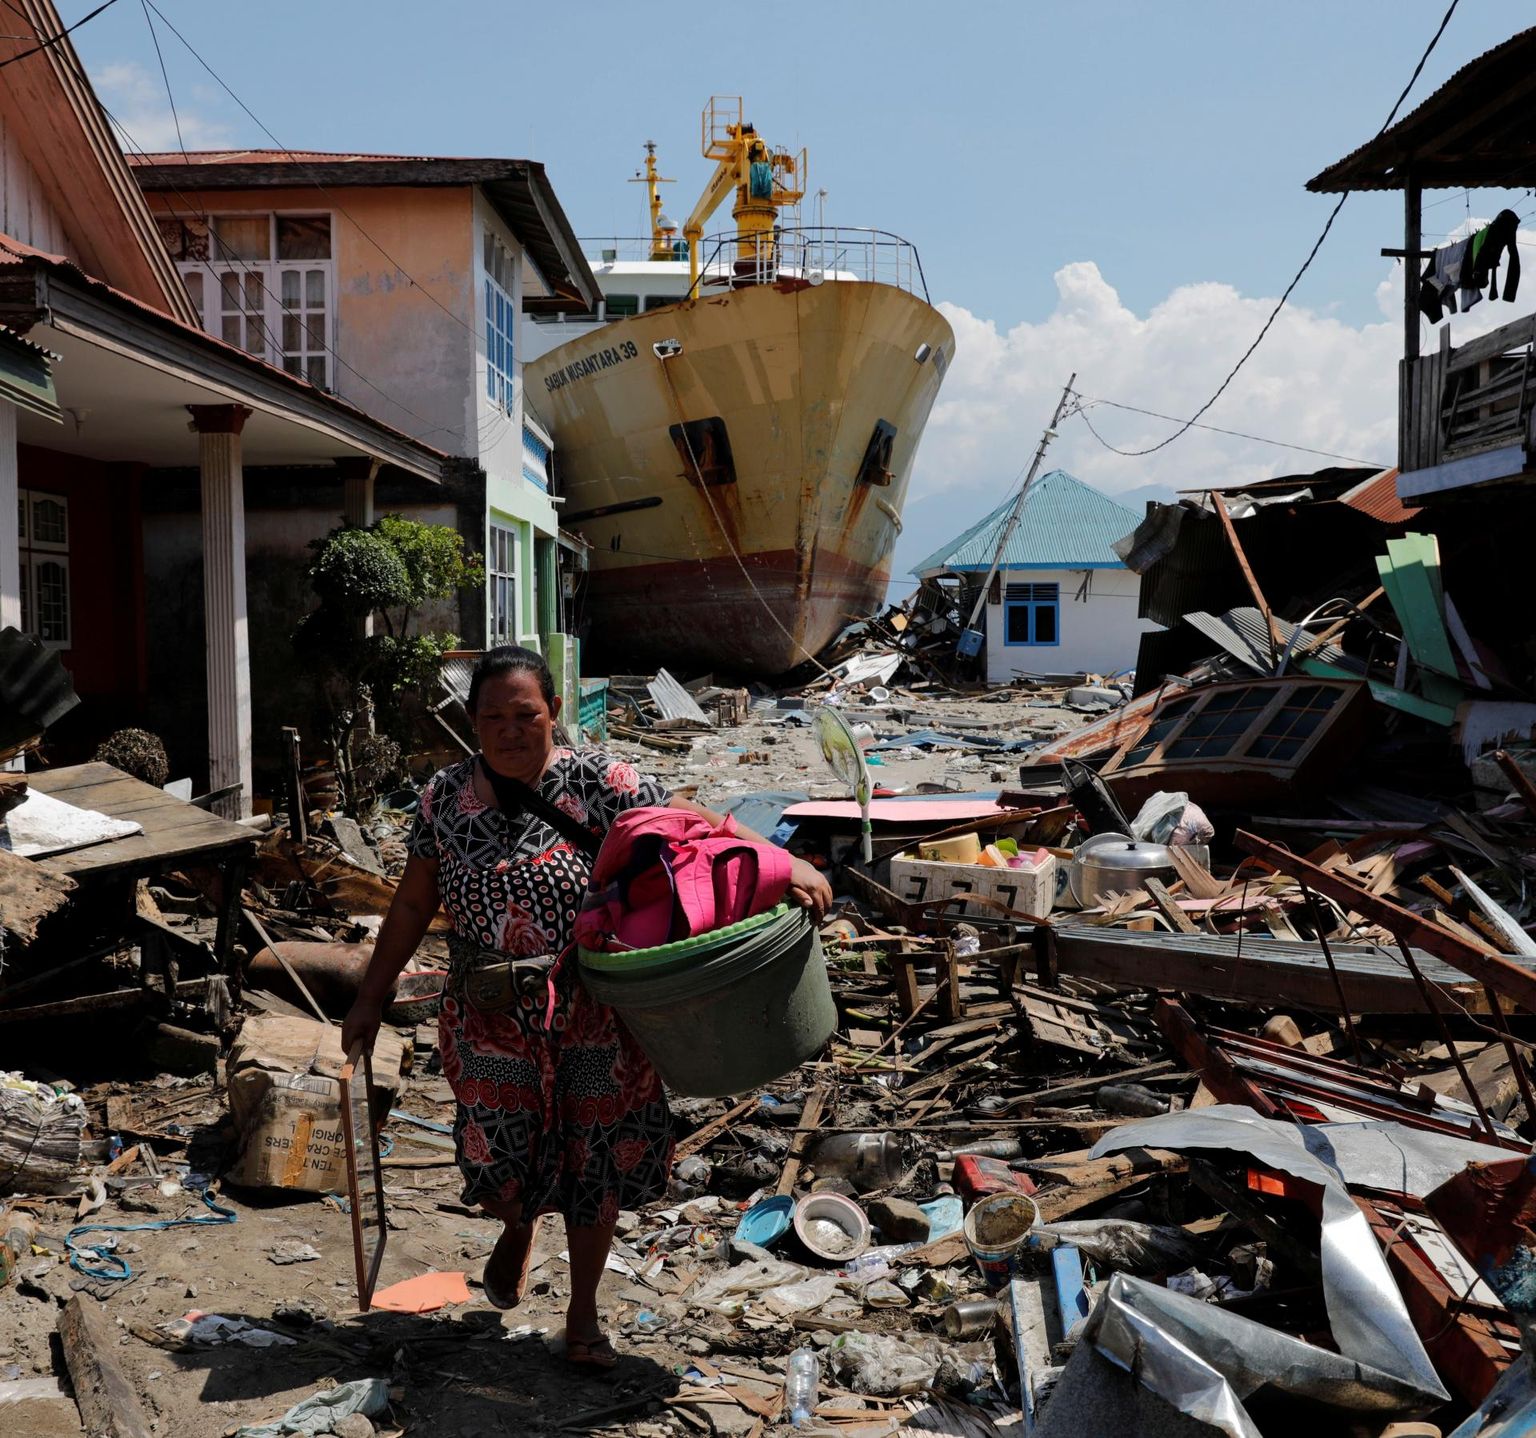 Naine kõndimas oma varanatukesega tsunamis kannatada saanud Wani külas Donggala regioonis. Seni pole päästjad ja toiduabi piirkonda õieti jõudnud.